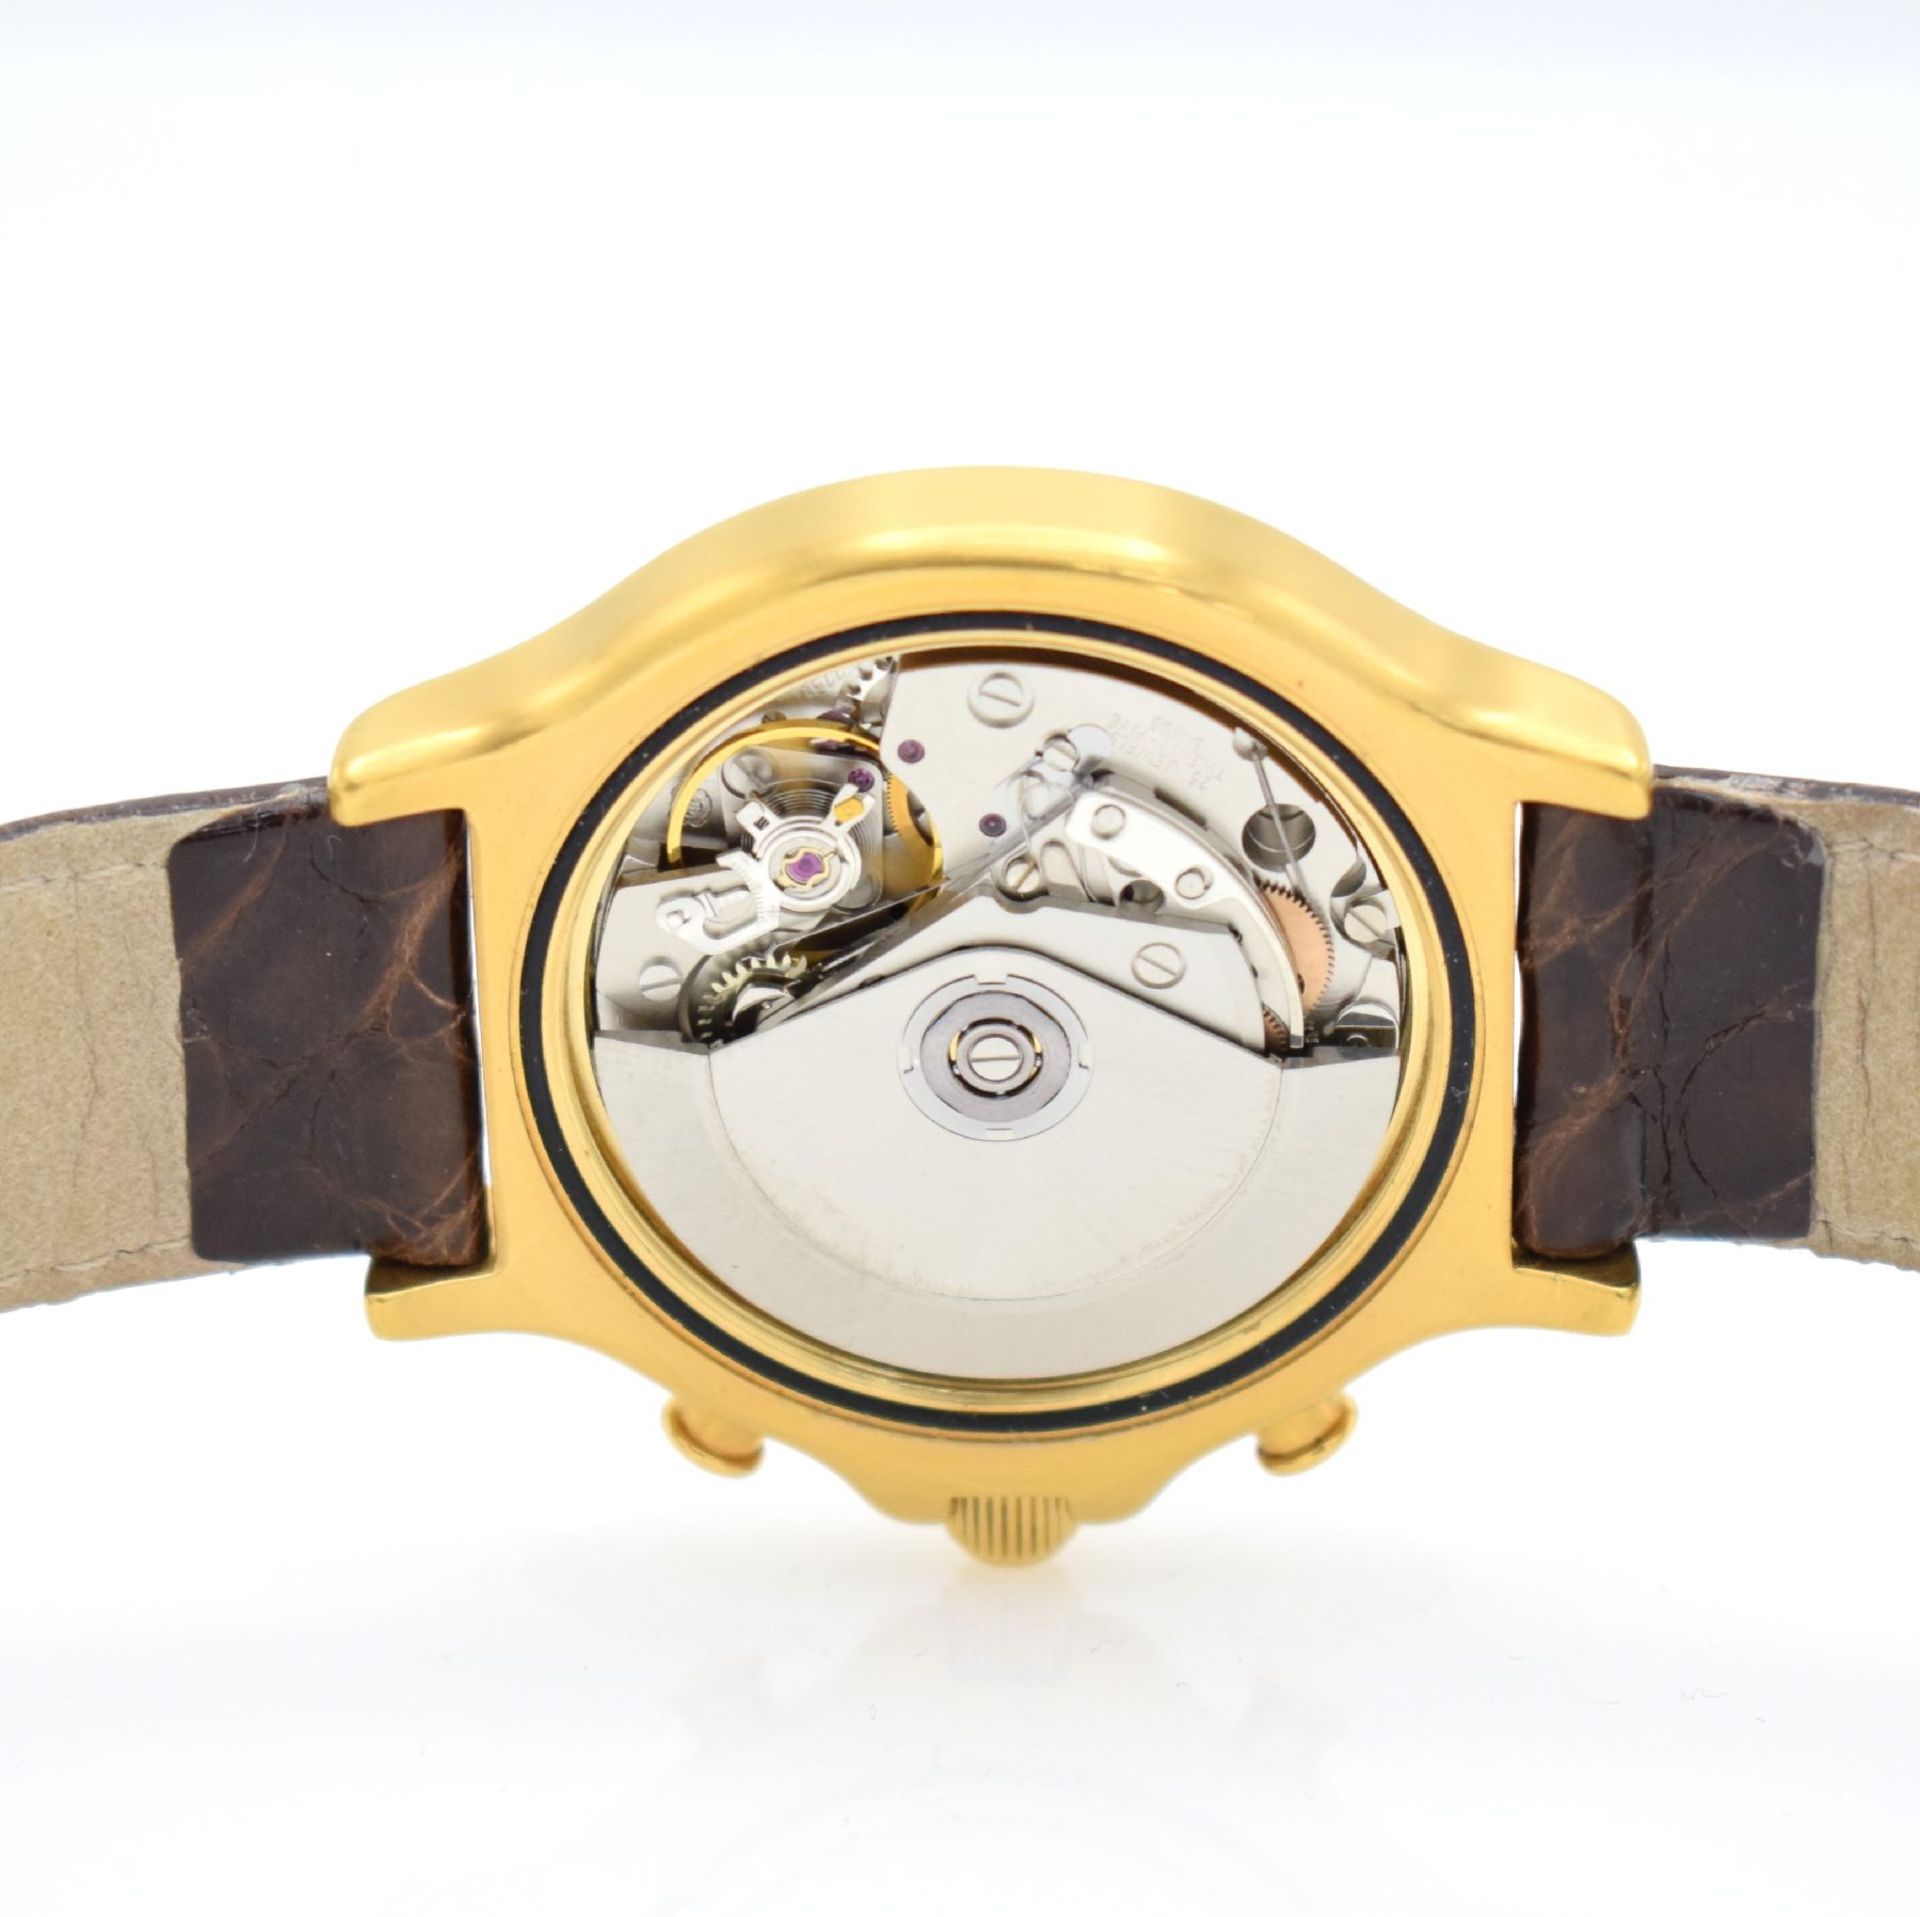 DU BOIS Regular 1 gents chronograph, Switzerland around 2000, self winding, gold plated case, - Bild 7 aus 7